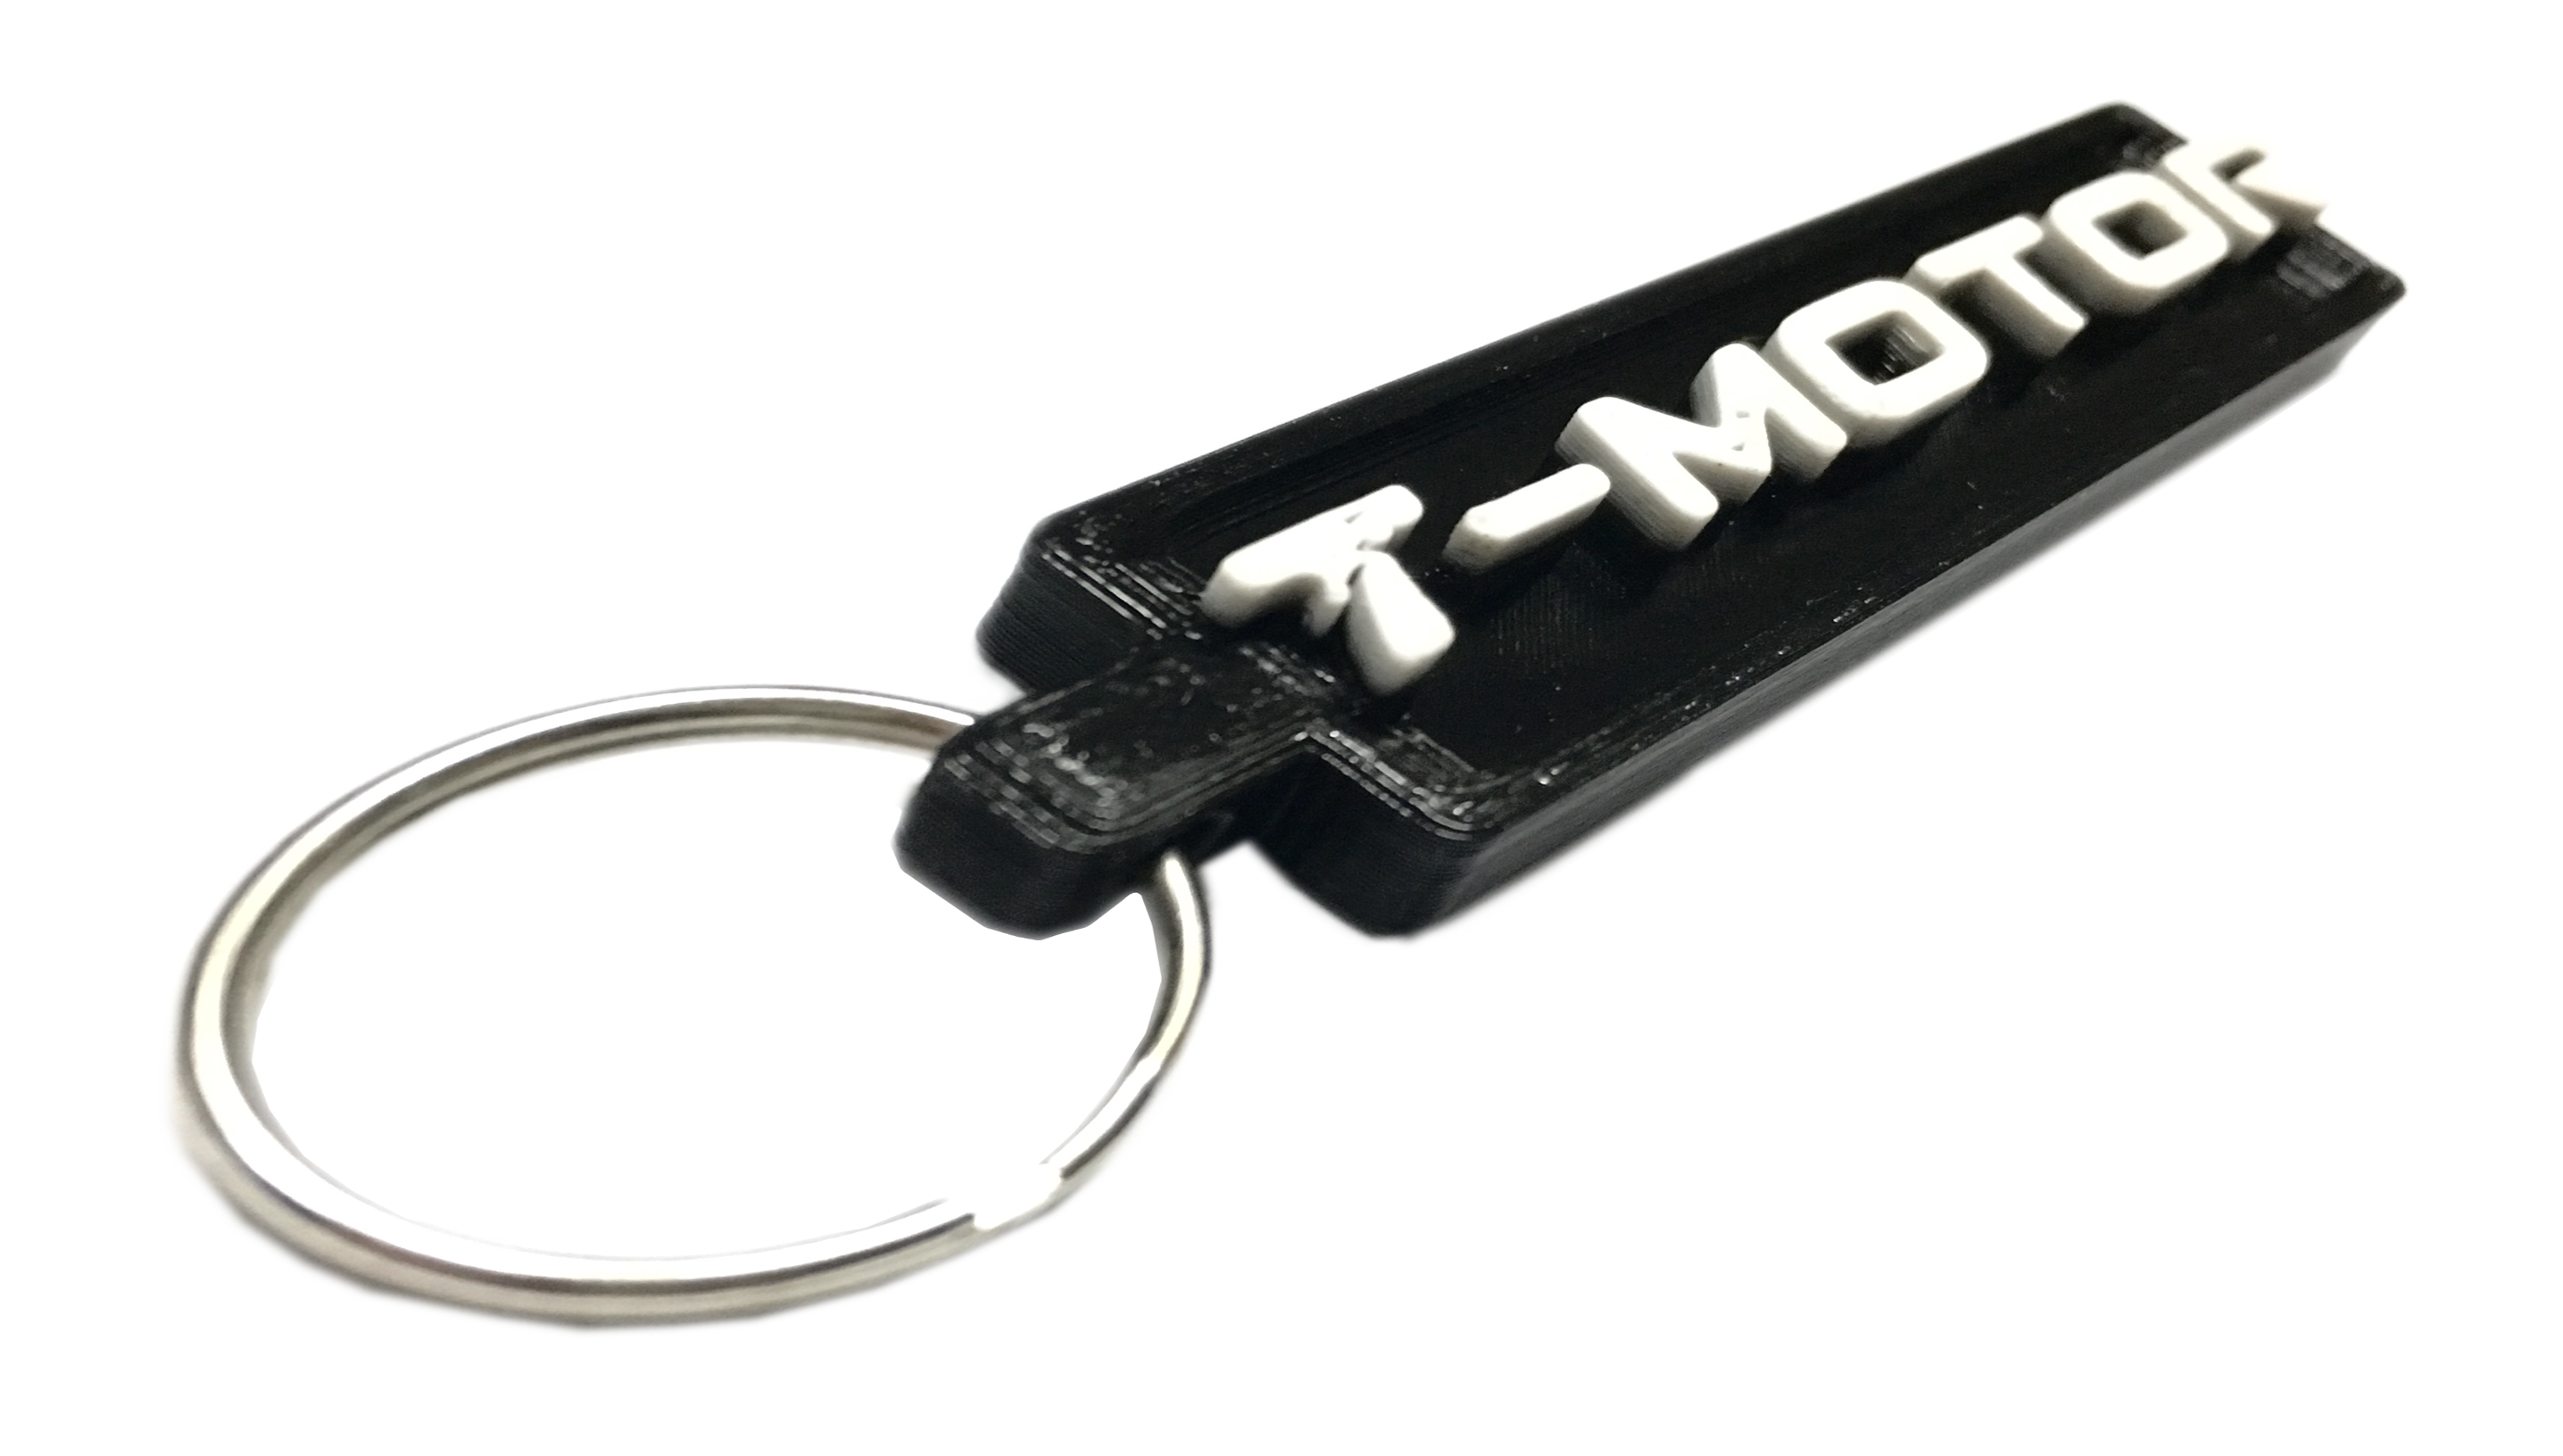 T-Motor Keychain / Luggage Tag